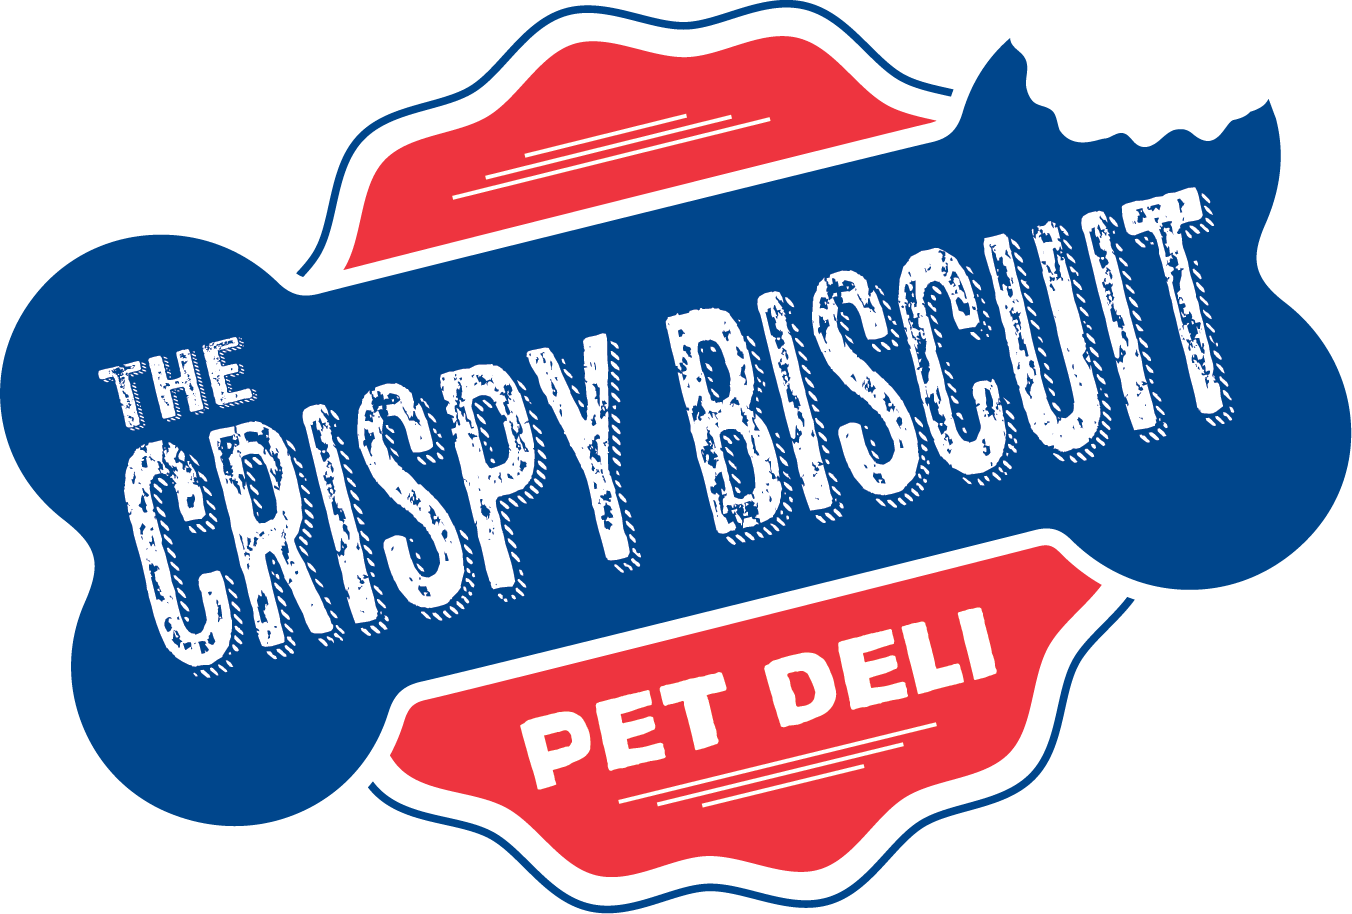 The Crispy Biscuit Pet Deli